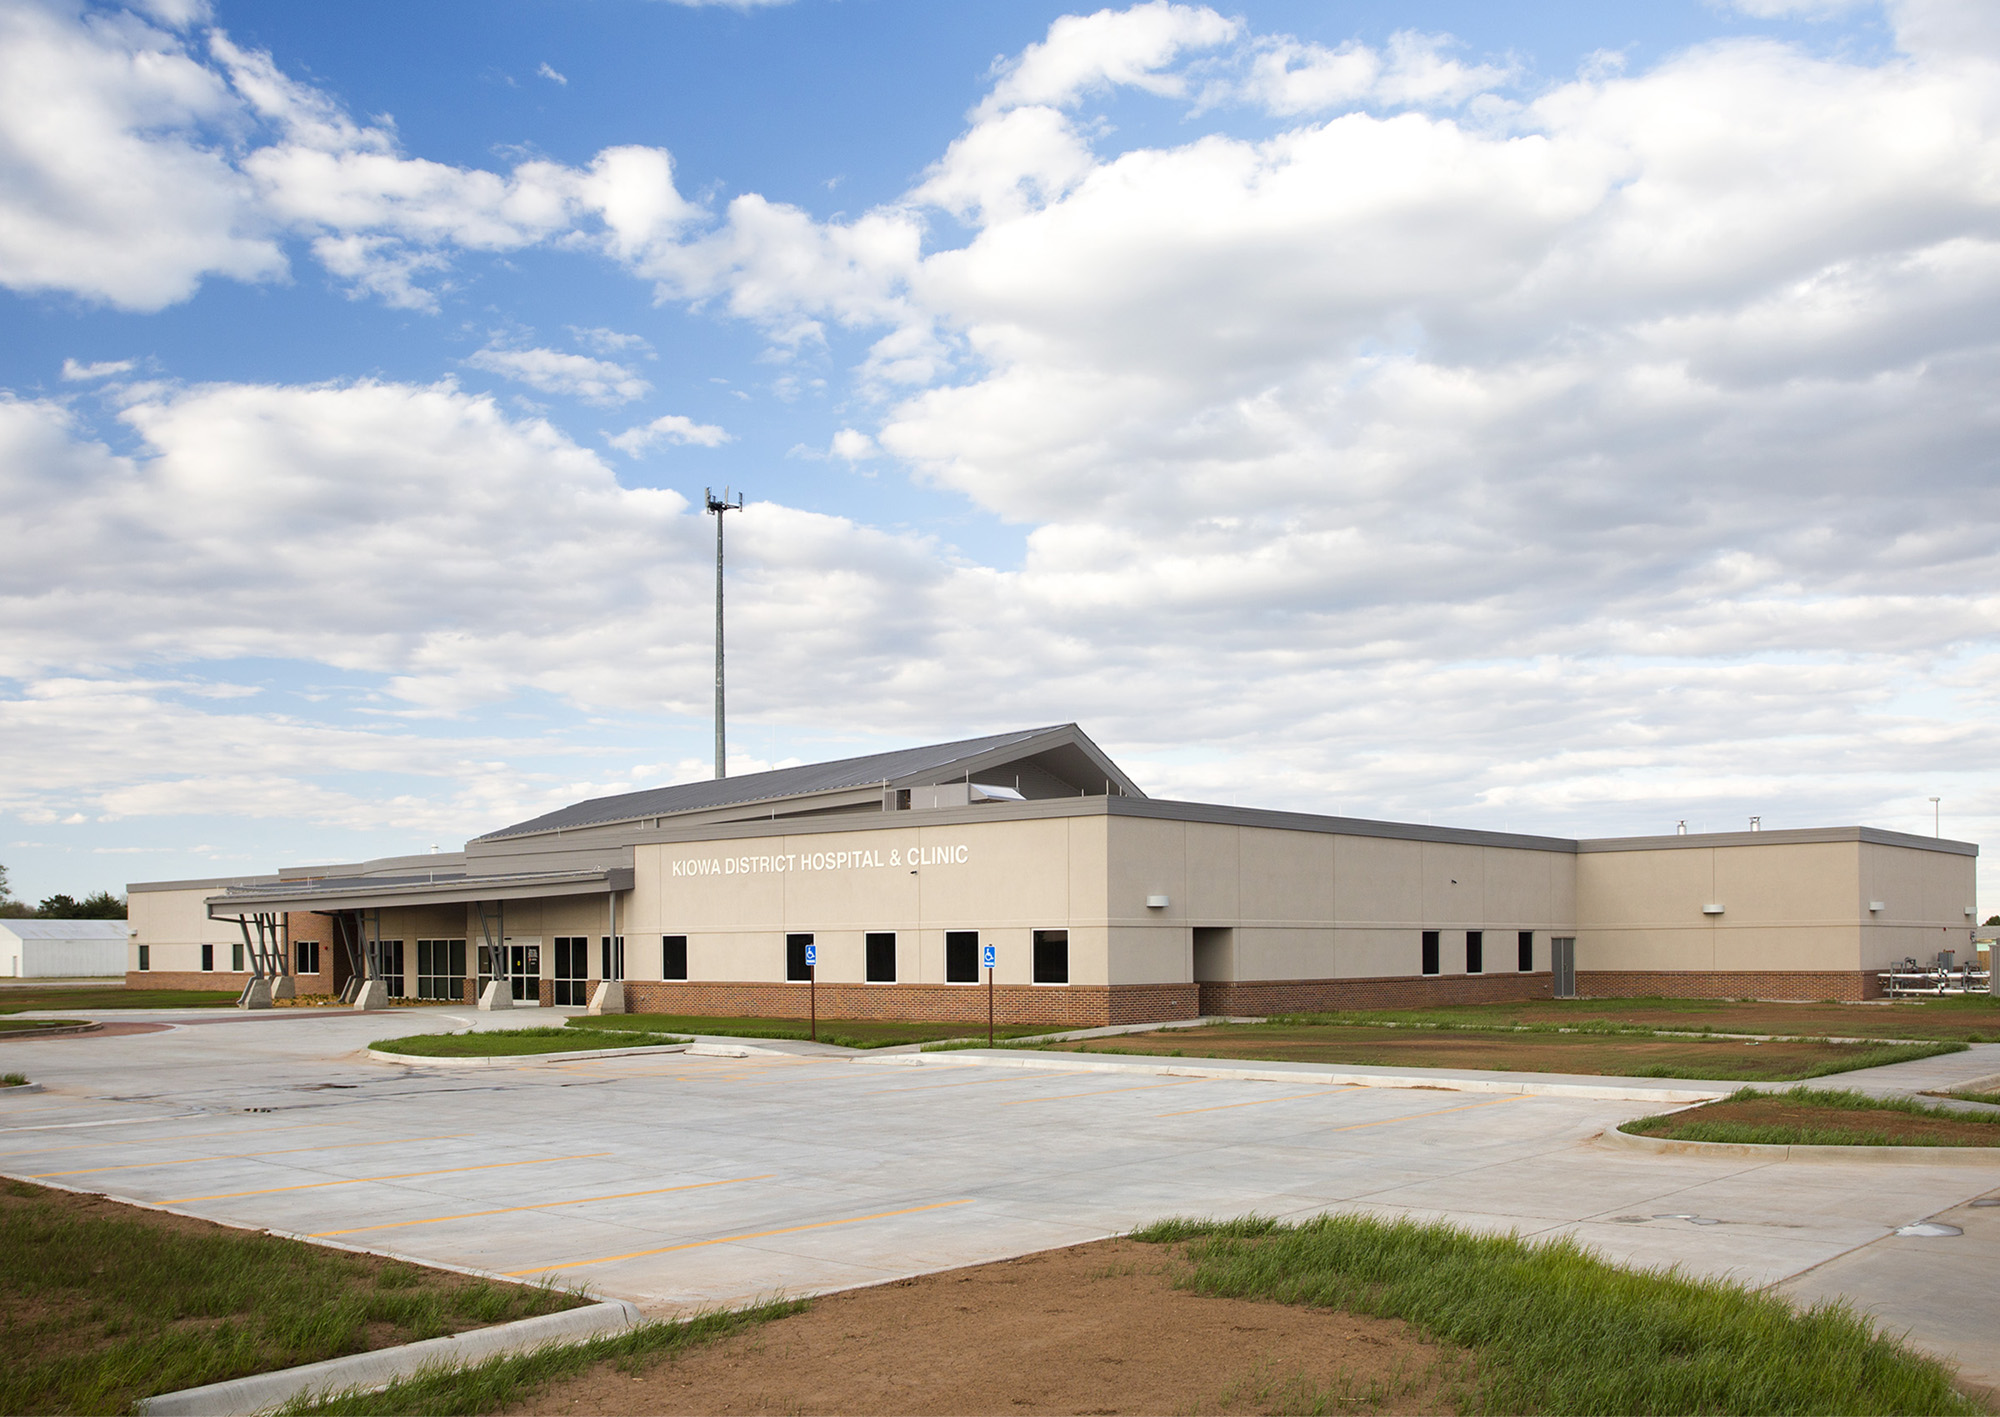 Kiowa District Hospital & Clinic